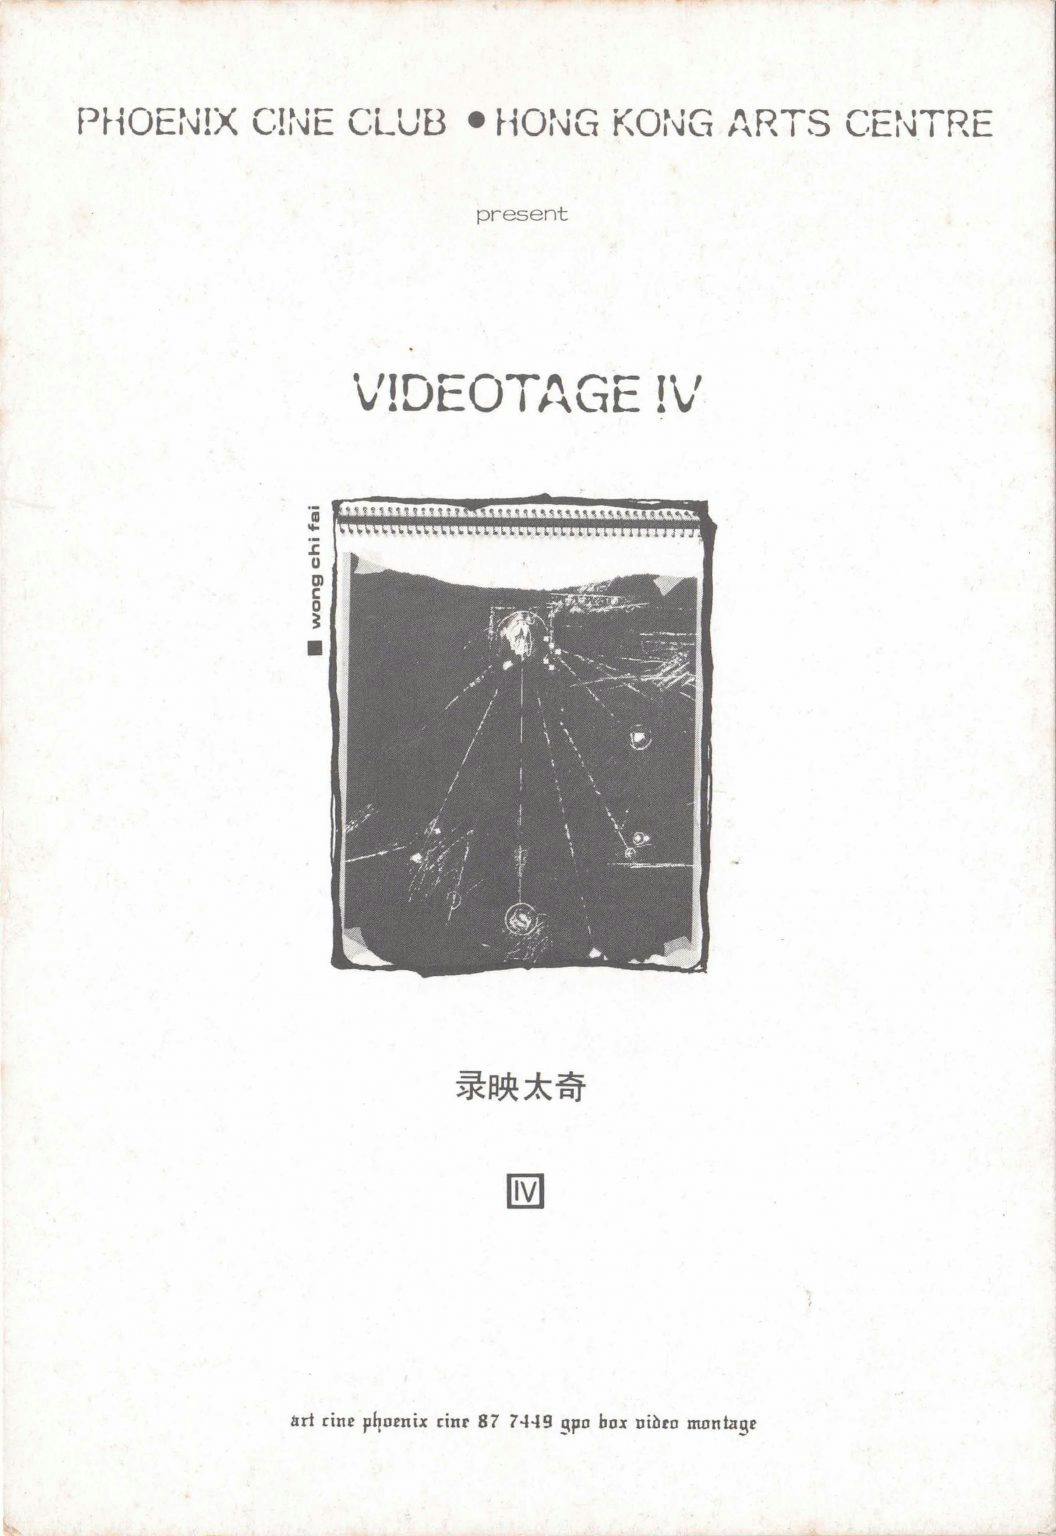 Videotage IV 錄影太奇 IV